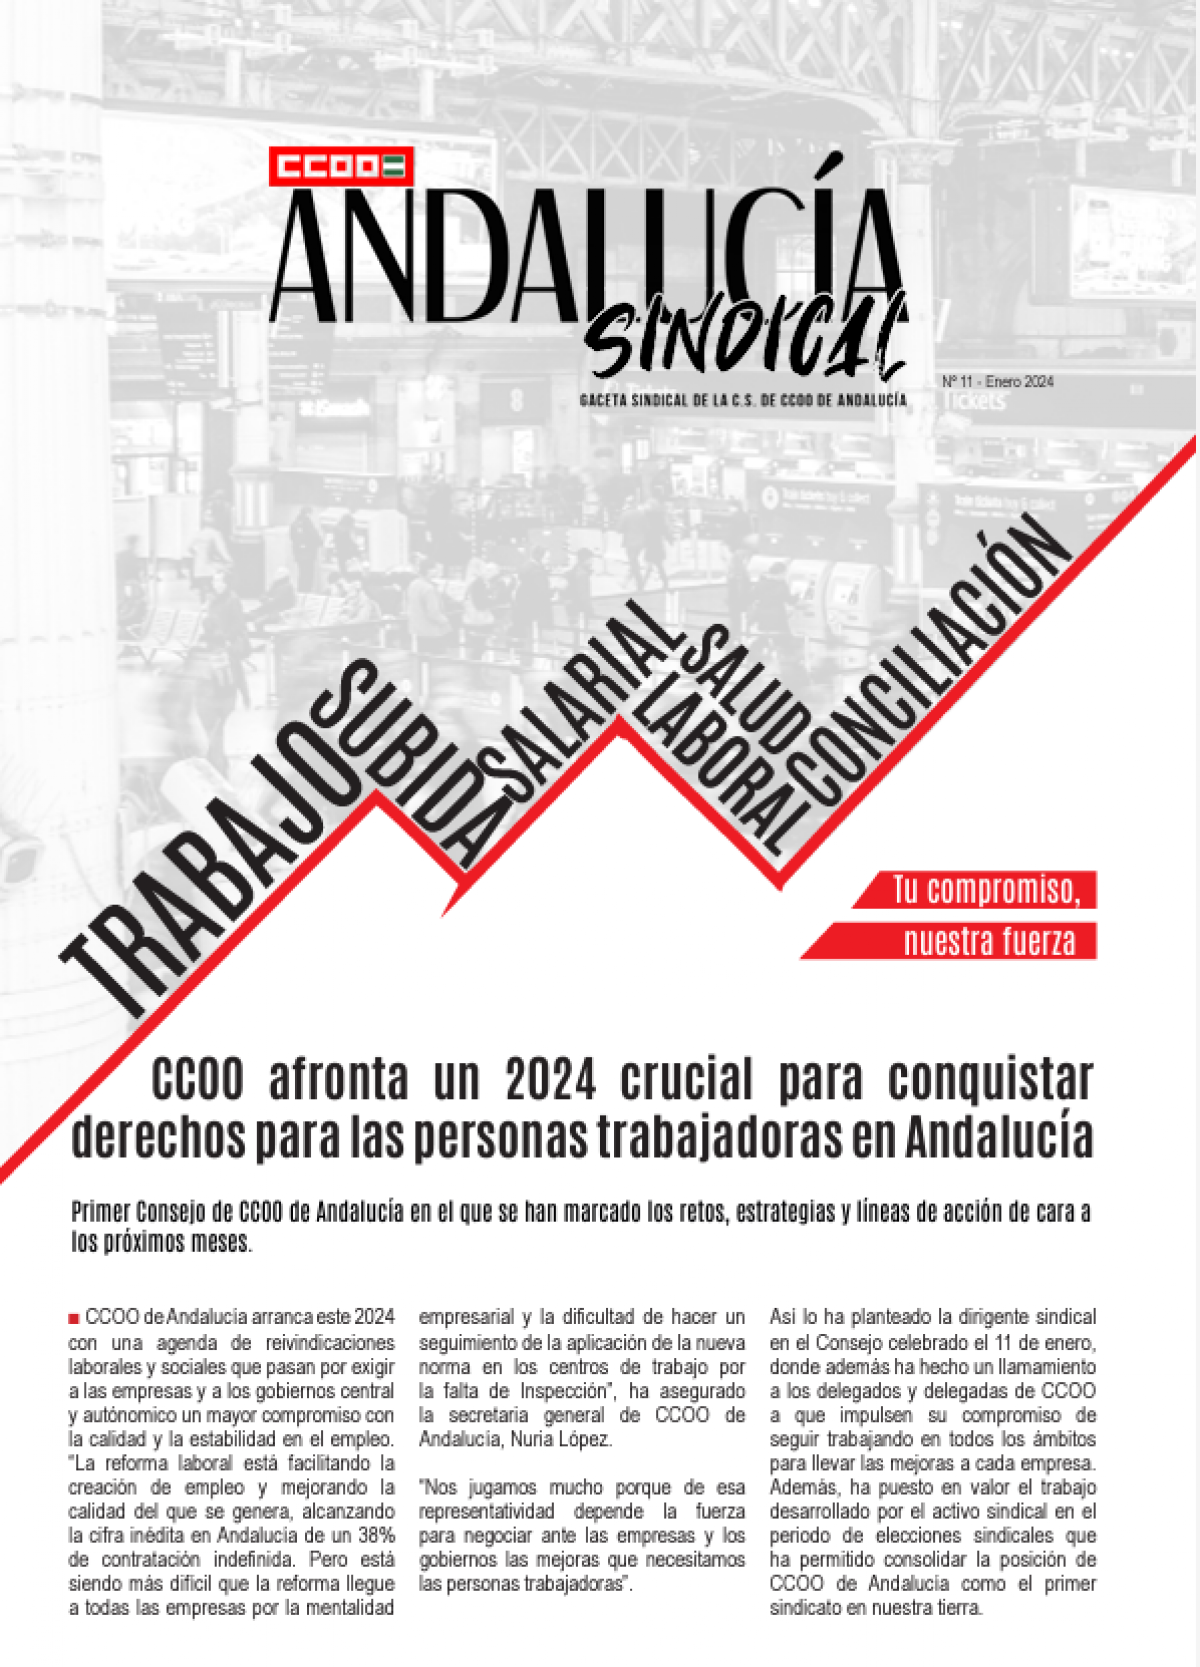 Andaluca Sindical N11 - El sindicato marca los retos, estrategias y lneas de accin de cara a los prximos meses de 2024